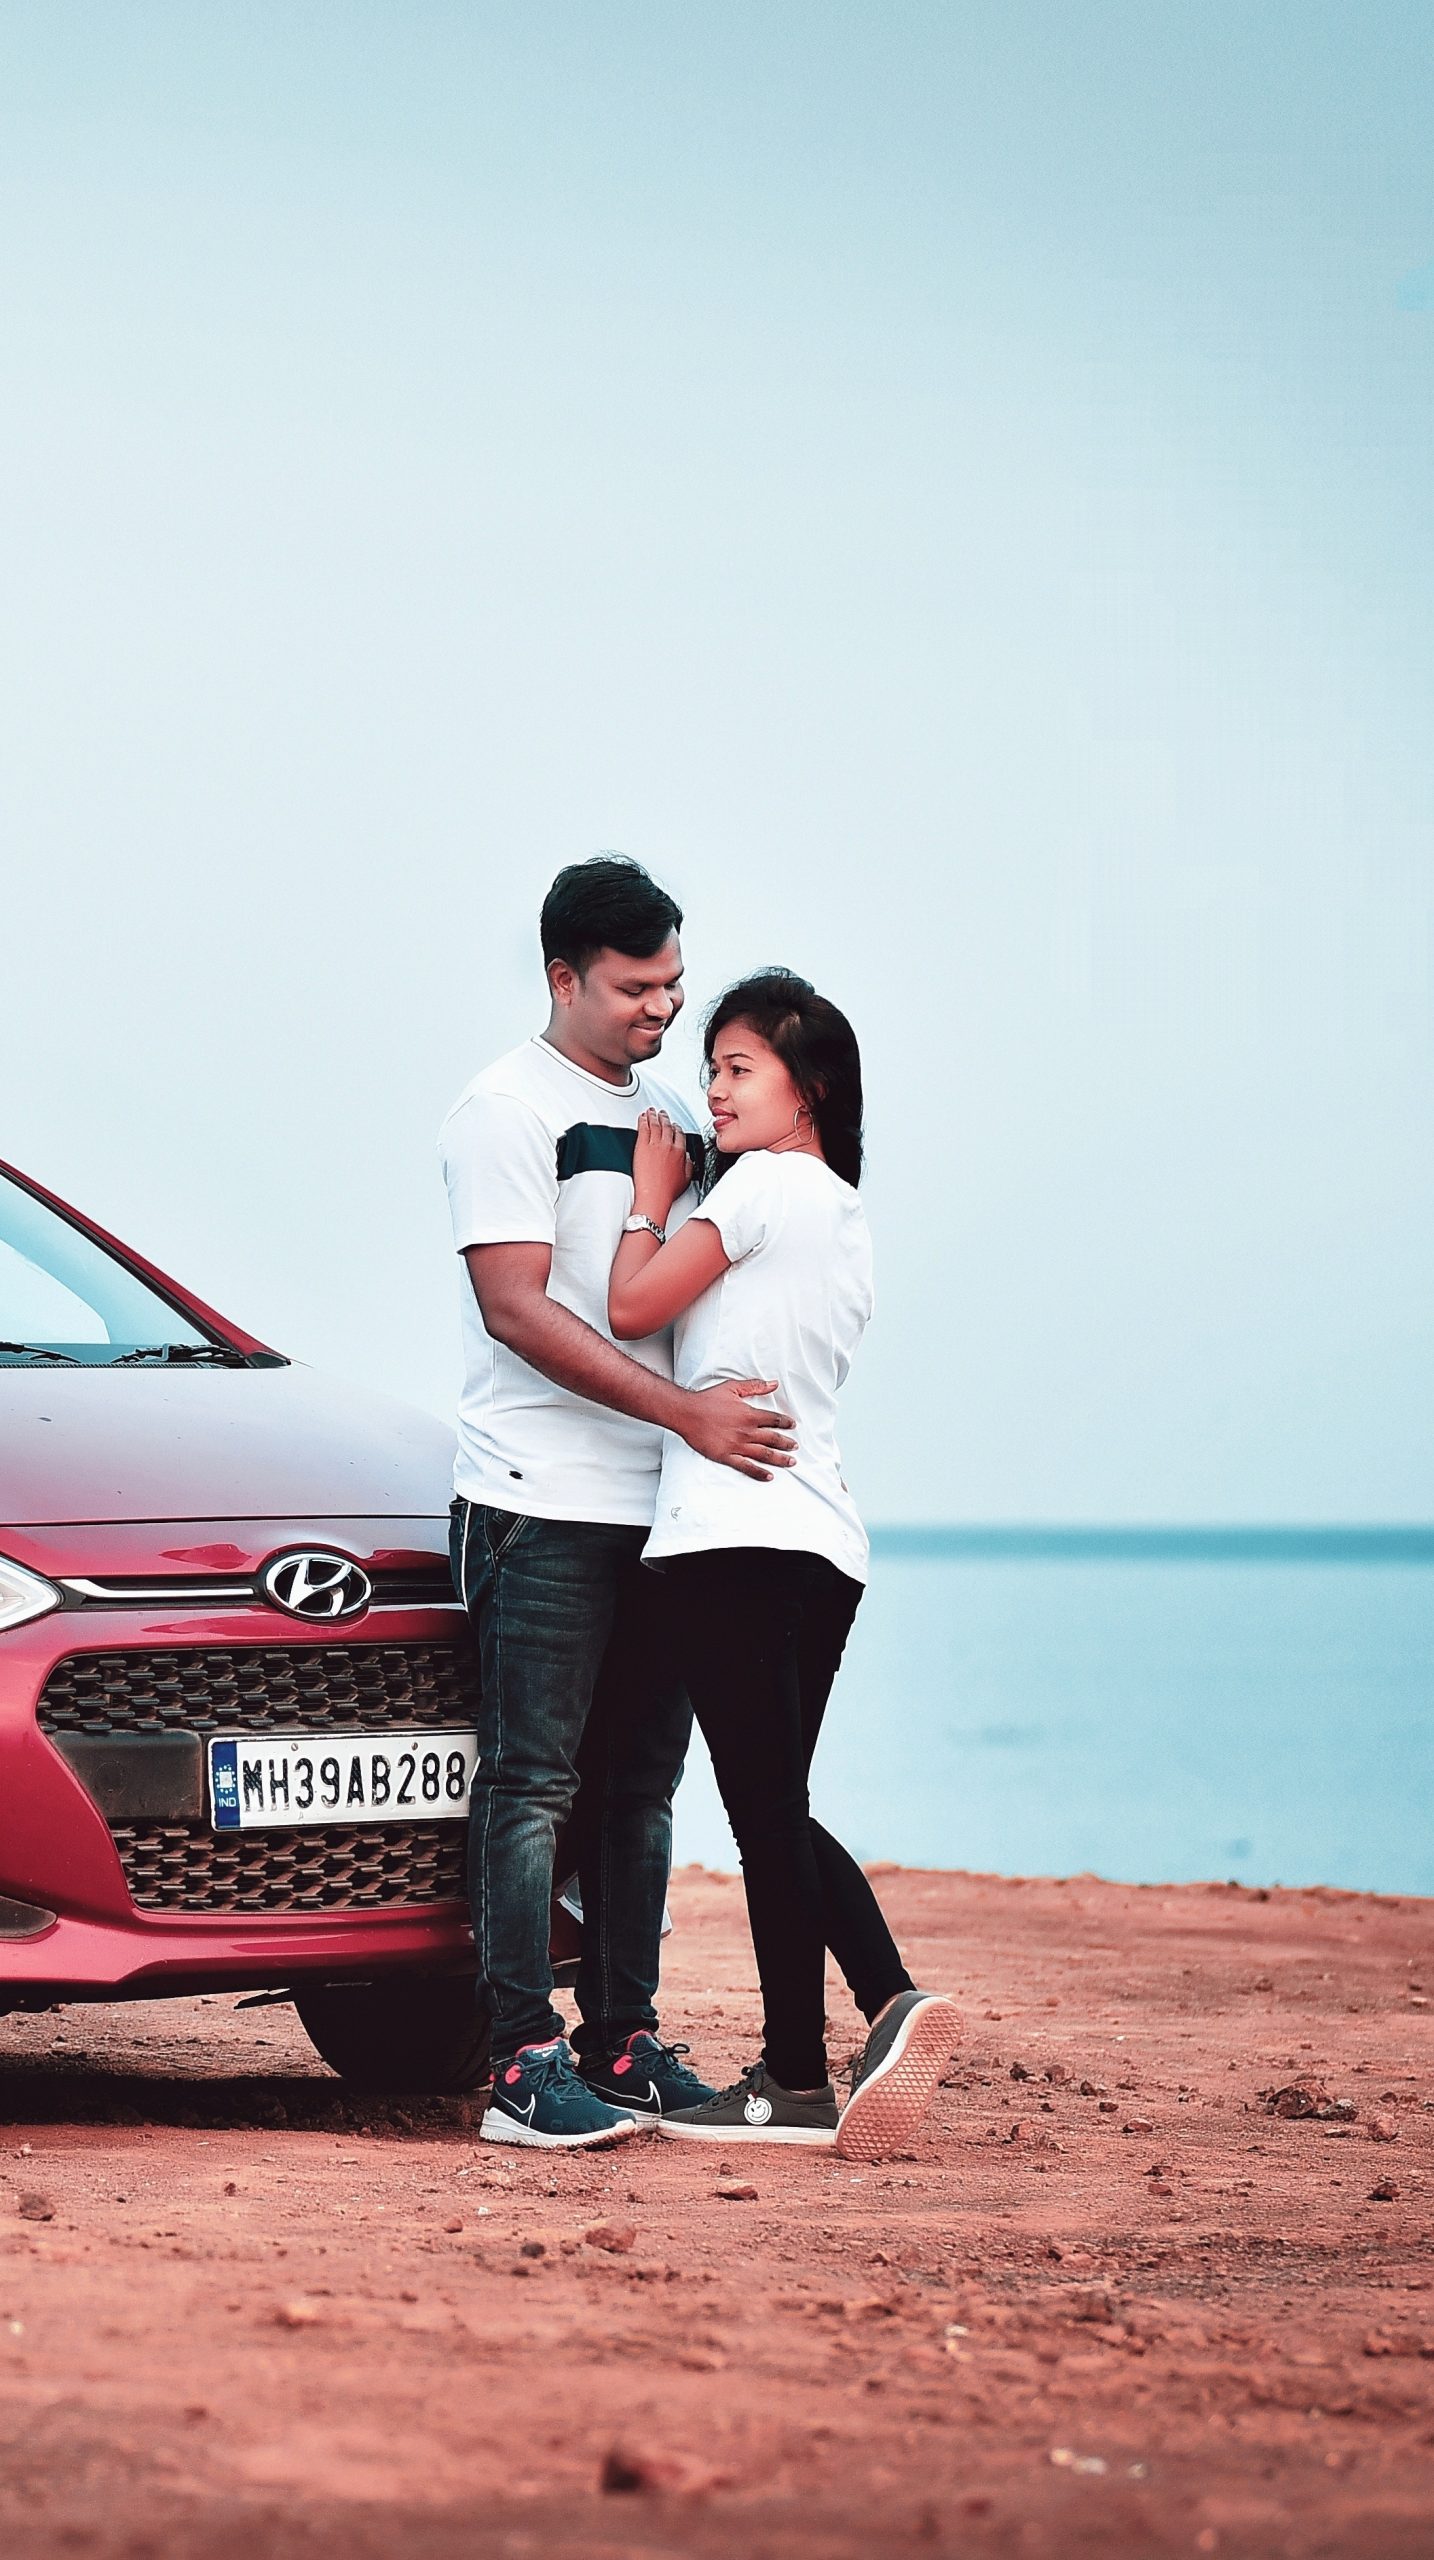 Casual couple posing near a car. Stock-Foto | Adobe Stock